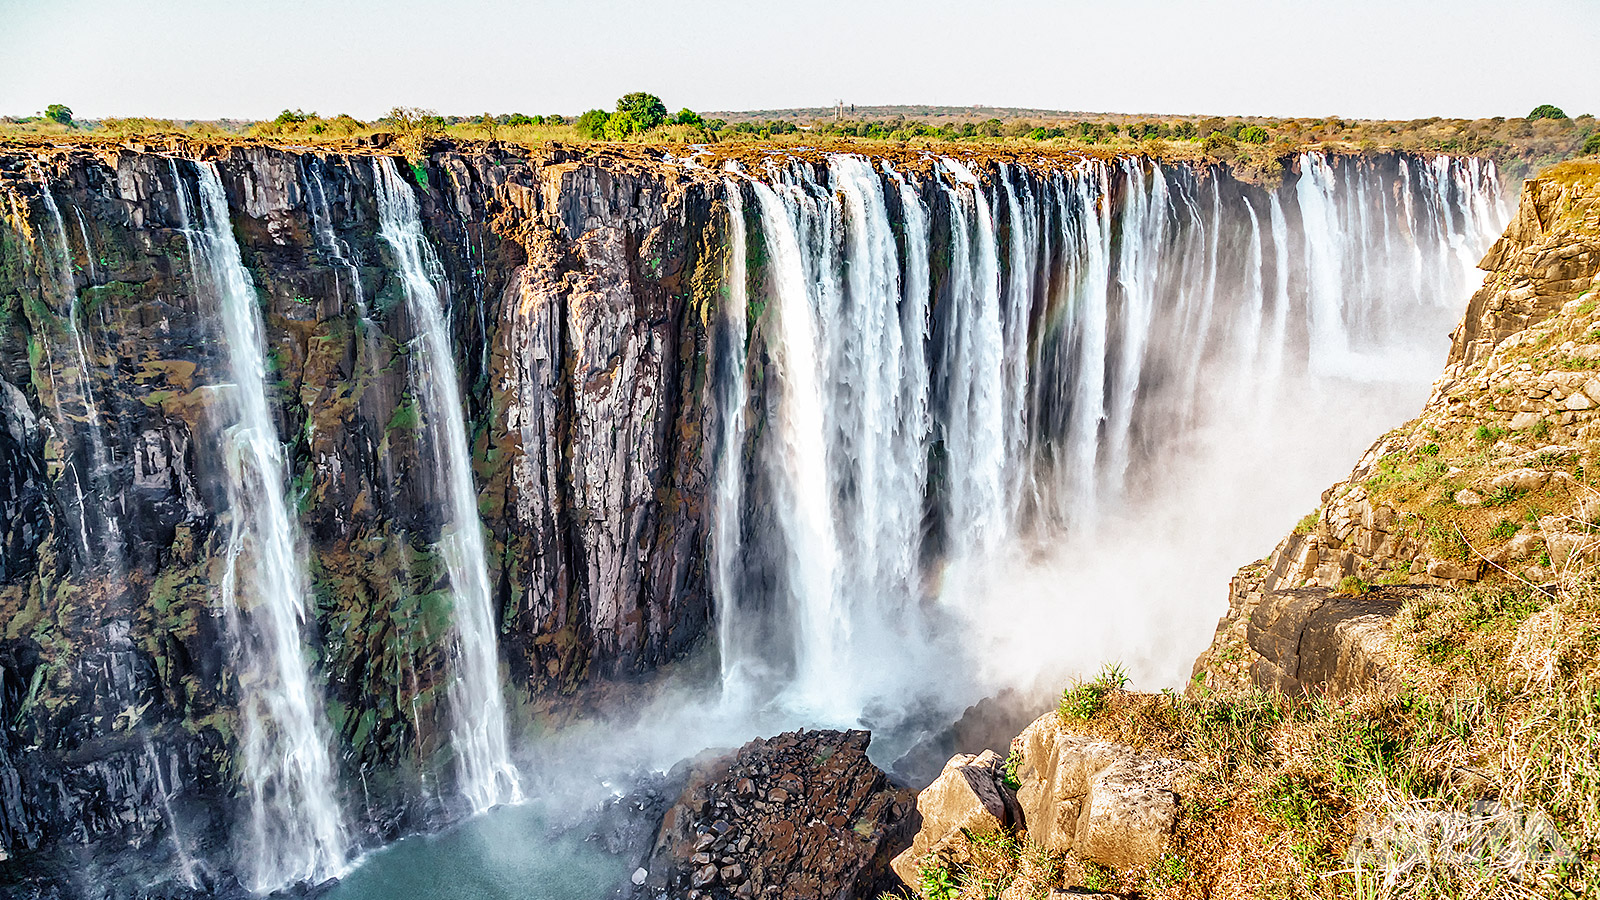 De watervallen liggen aan de Zambezi-rivier en vormen de grens tussen Zambia en Zimbabwe